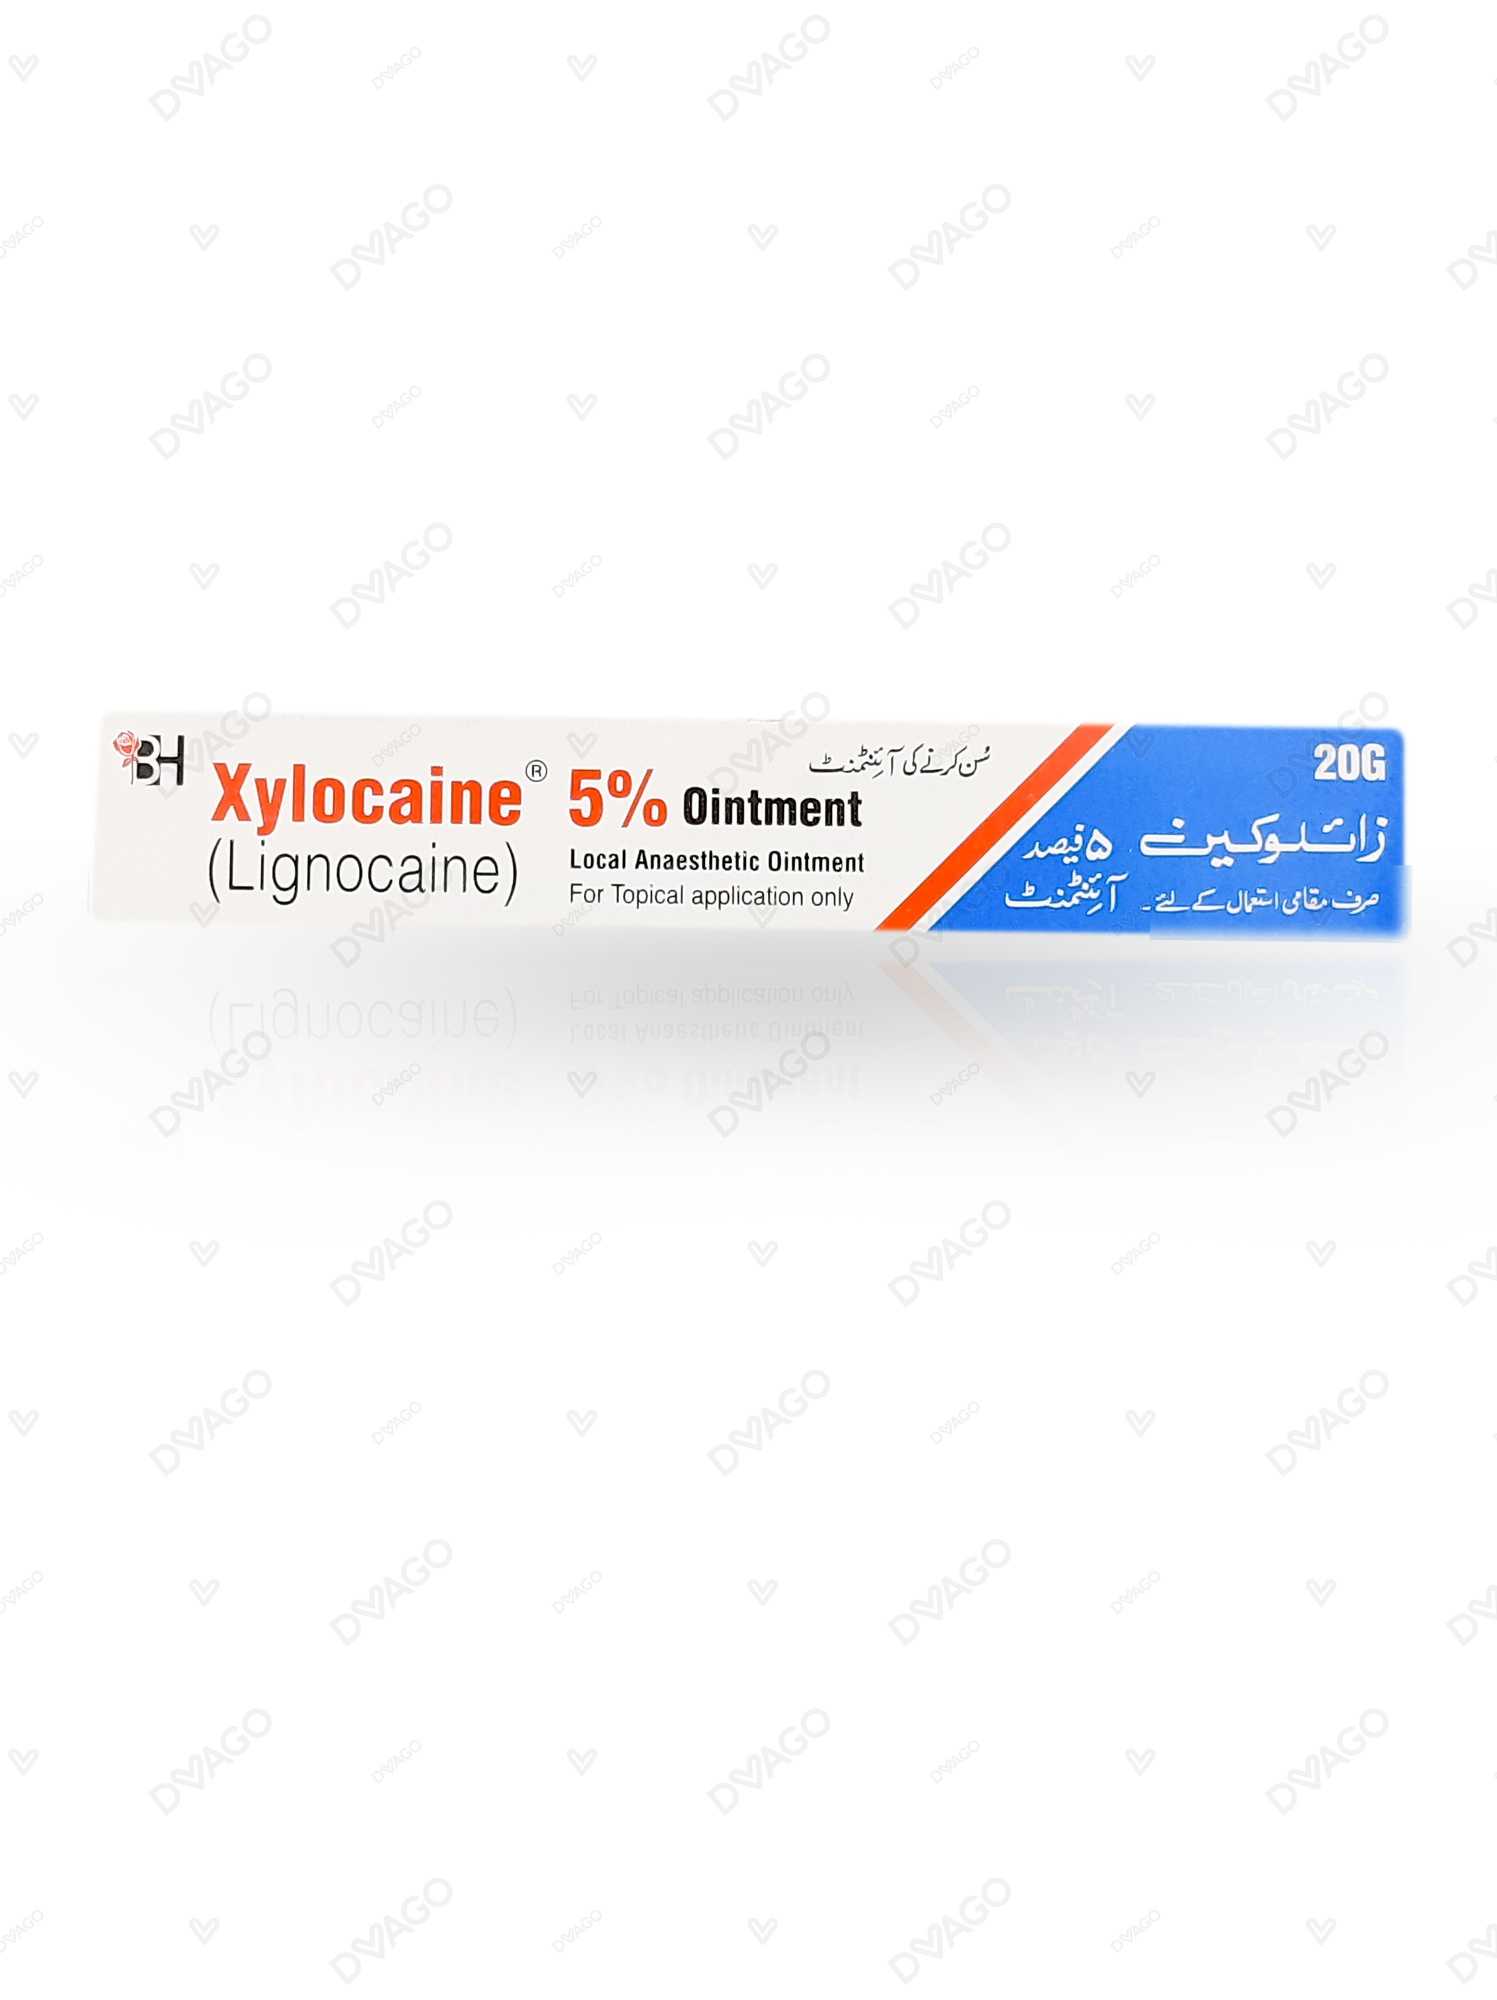 Sore Nipples Pain Relief - Xylocaine (Lidocaine)